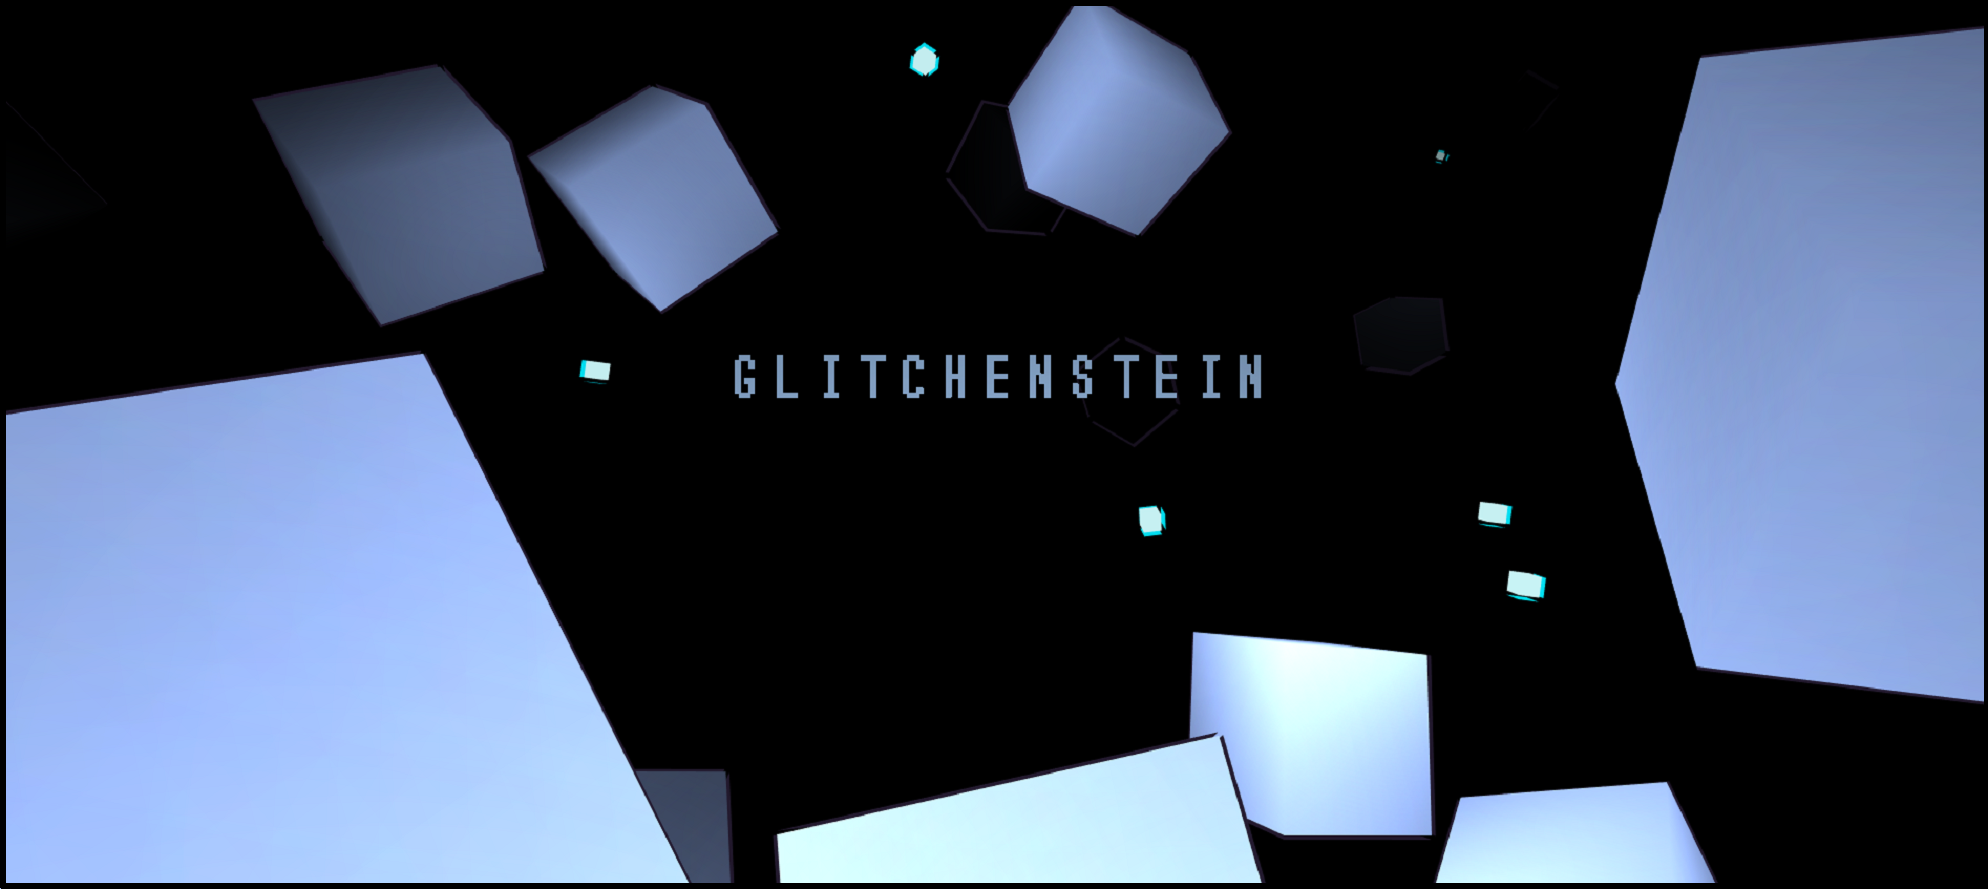 Glitchenstein